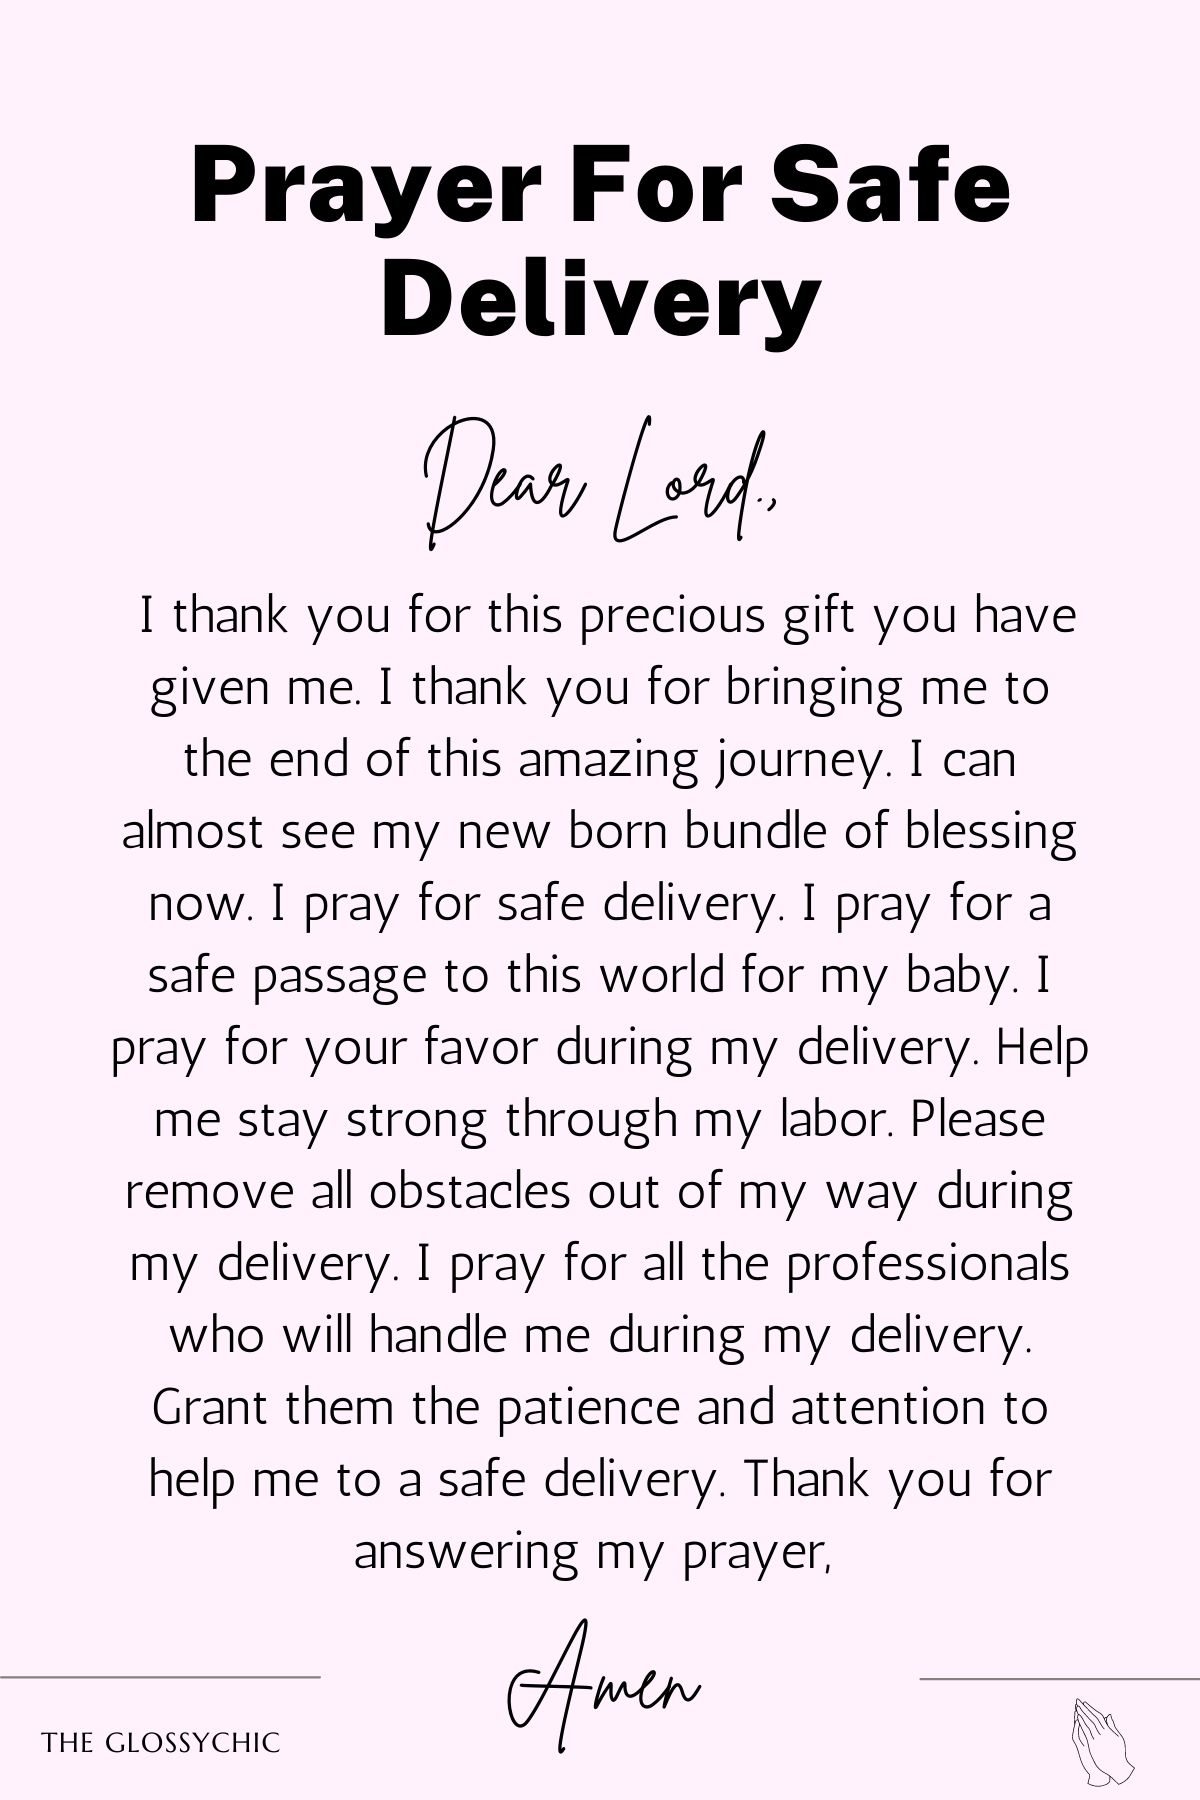 Prayer for safe delivery